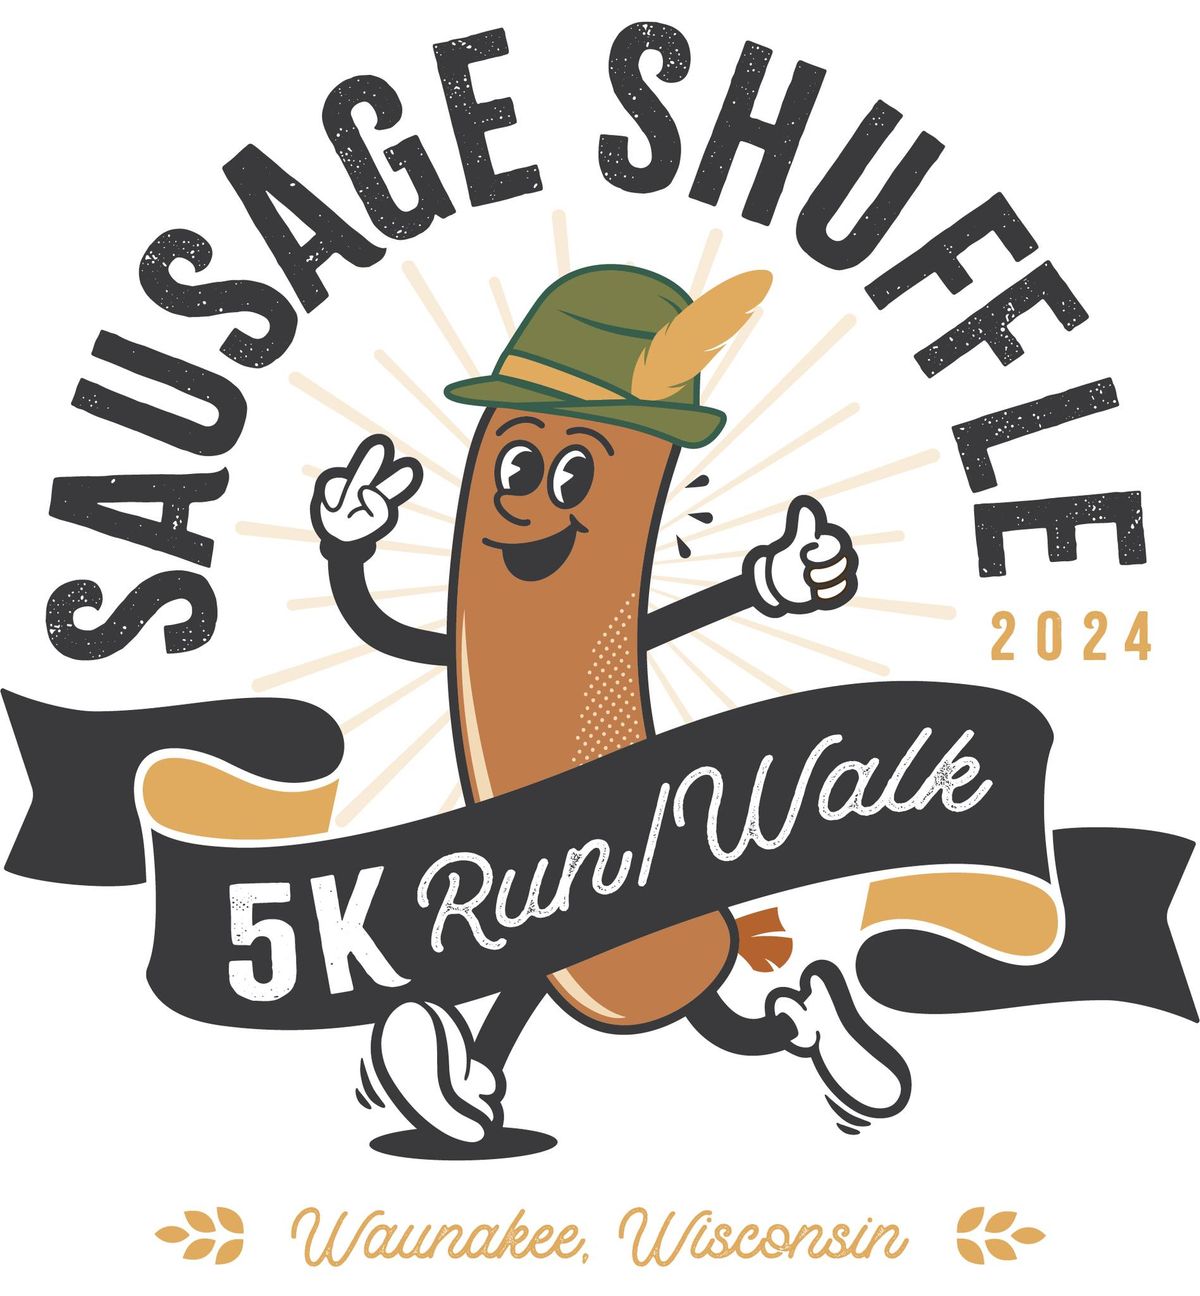 Wauktoberfest Sausage Shuffle 5K